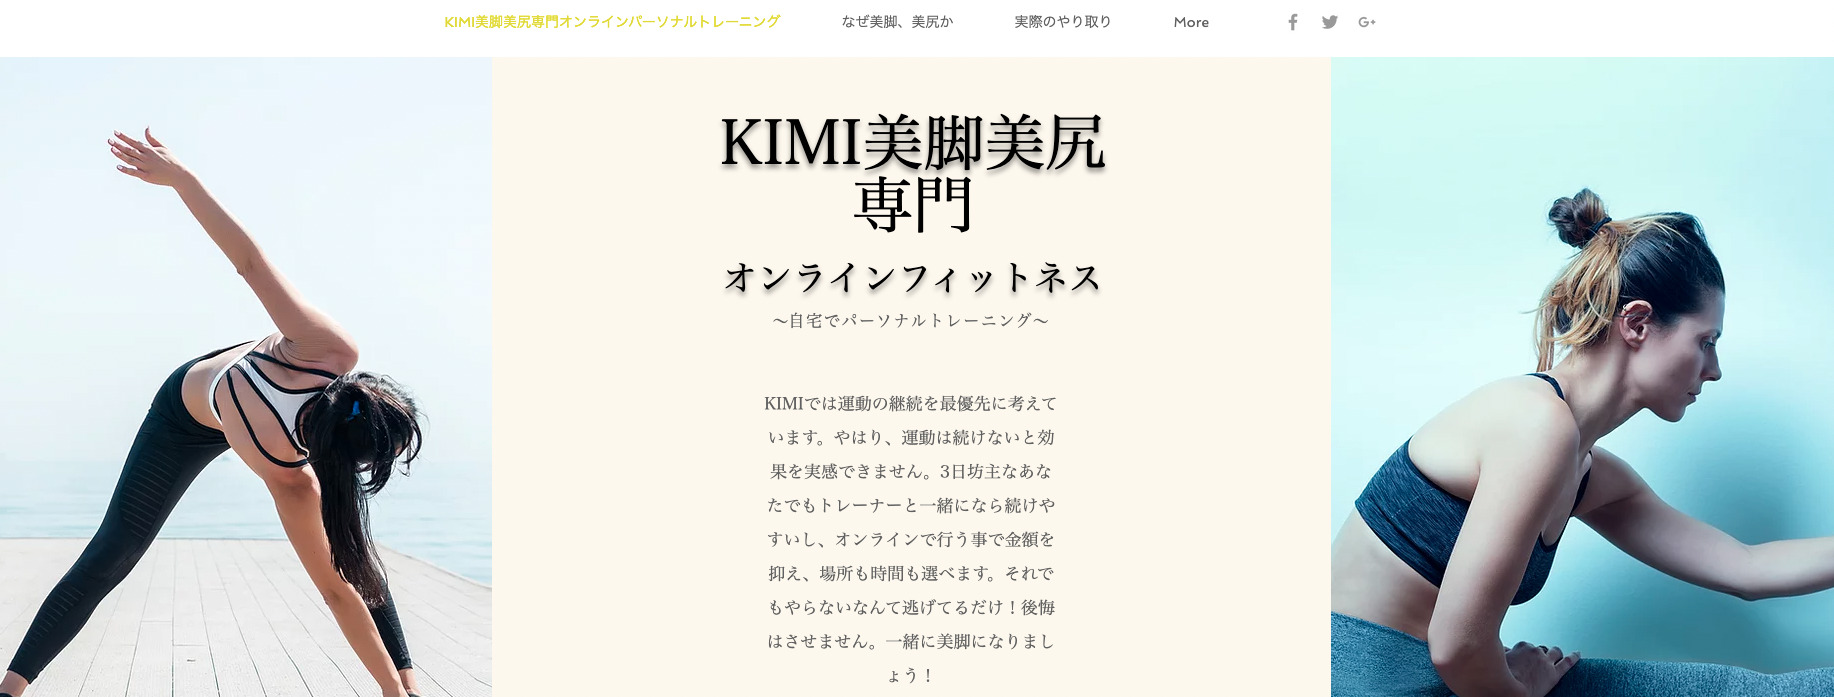 KIMIオンラインフィットネス とは